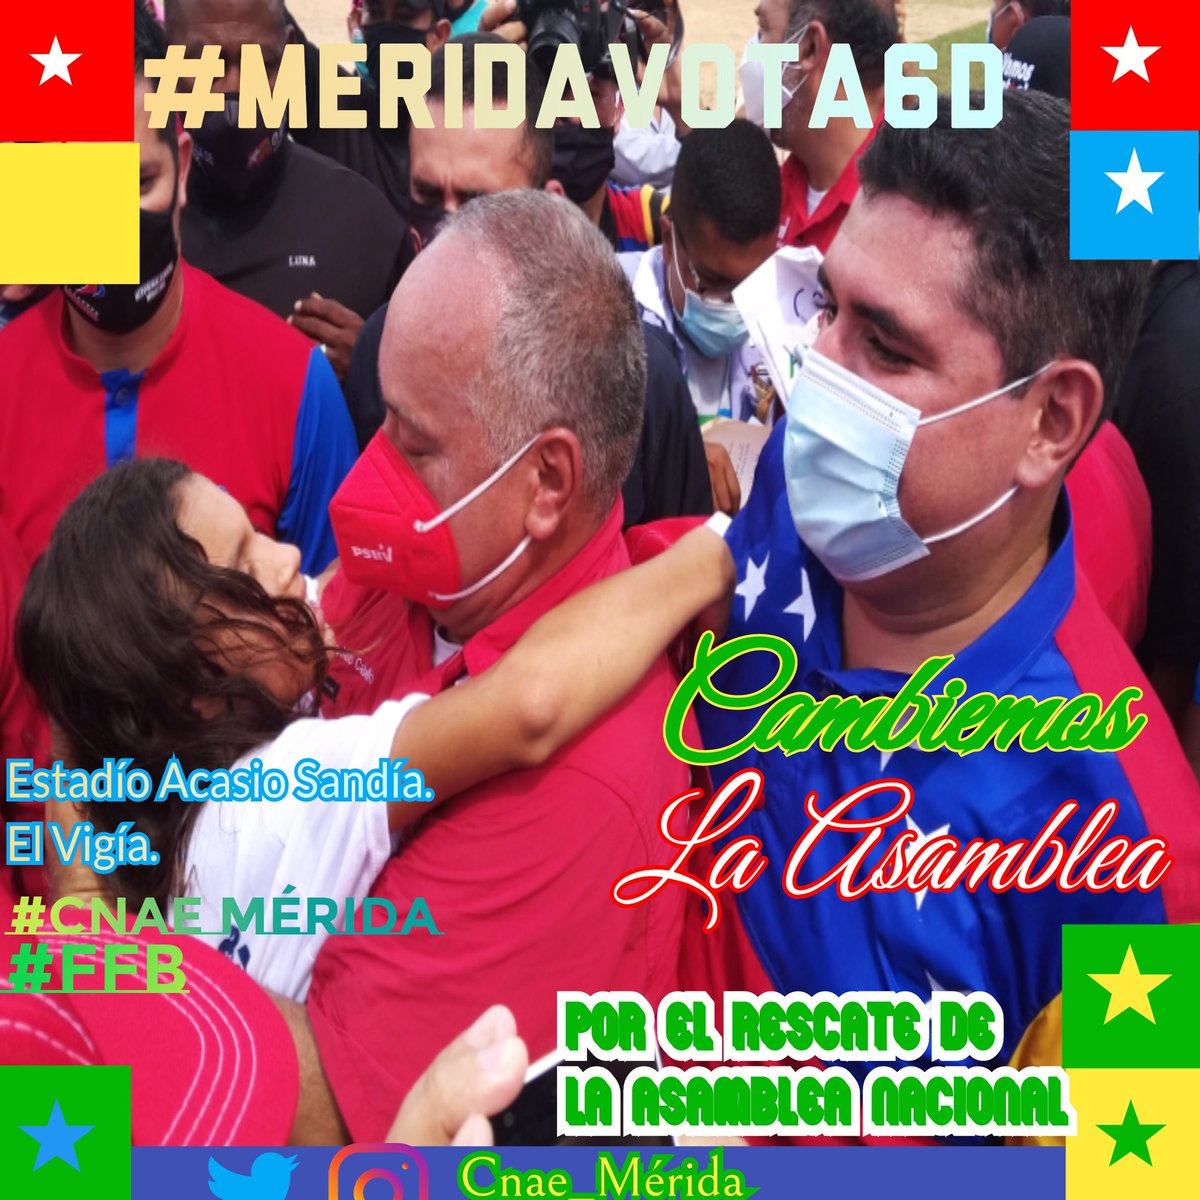 #MeridaVota6D  a la Victoria perfecta, junto a los candidatos de la Patria rescataremos la Asamblea Nacional.
@NicolasMaduro
 @JEHYSONGUZMAN
 @dcabellor 
@VenJuventudMRD 
@CCDarioVivasMRD 
@ComandoDVMerida